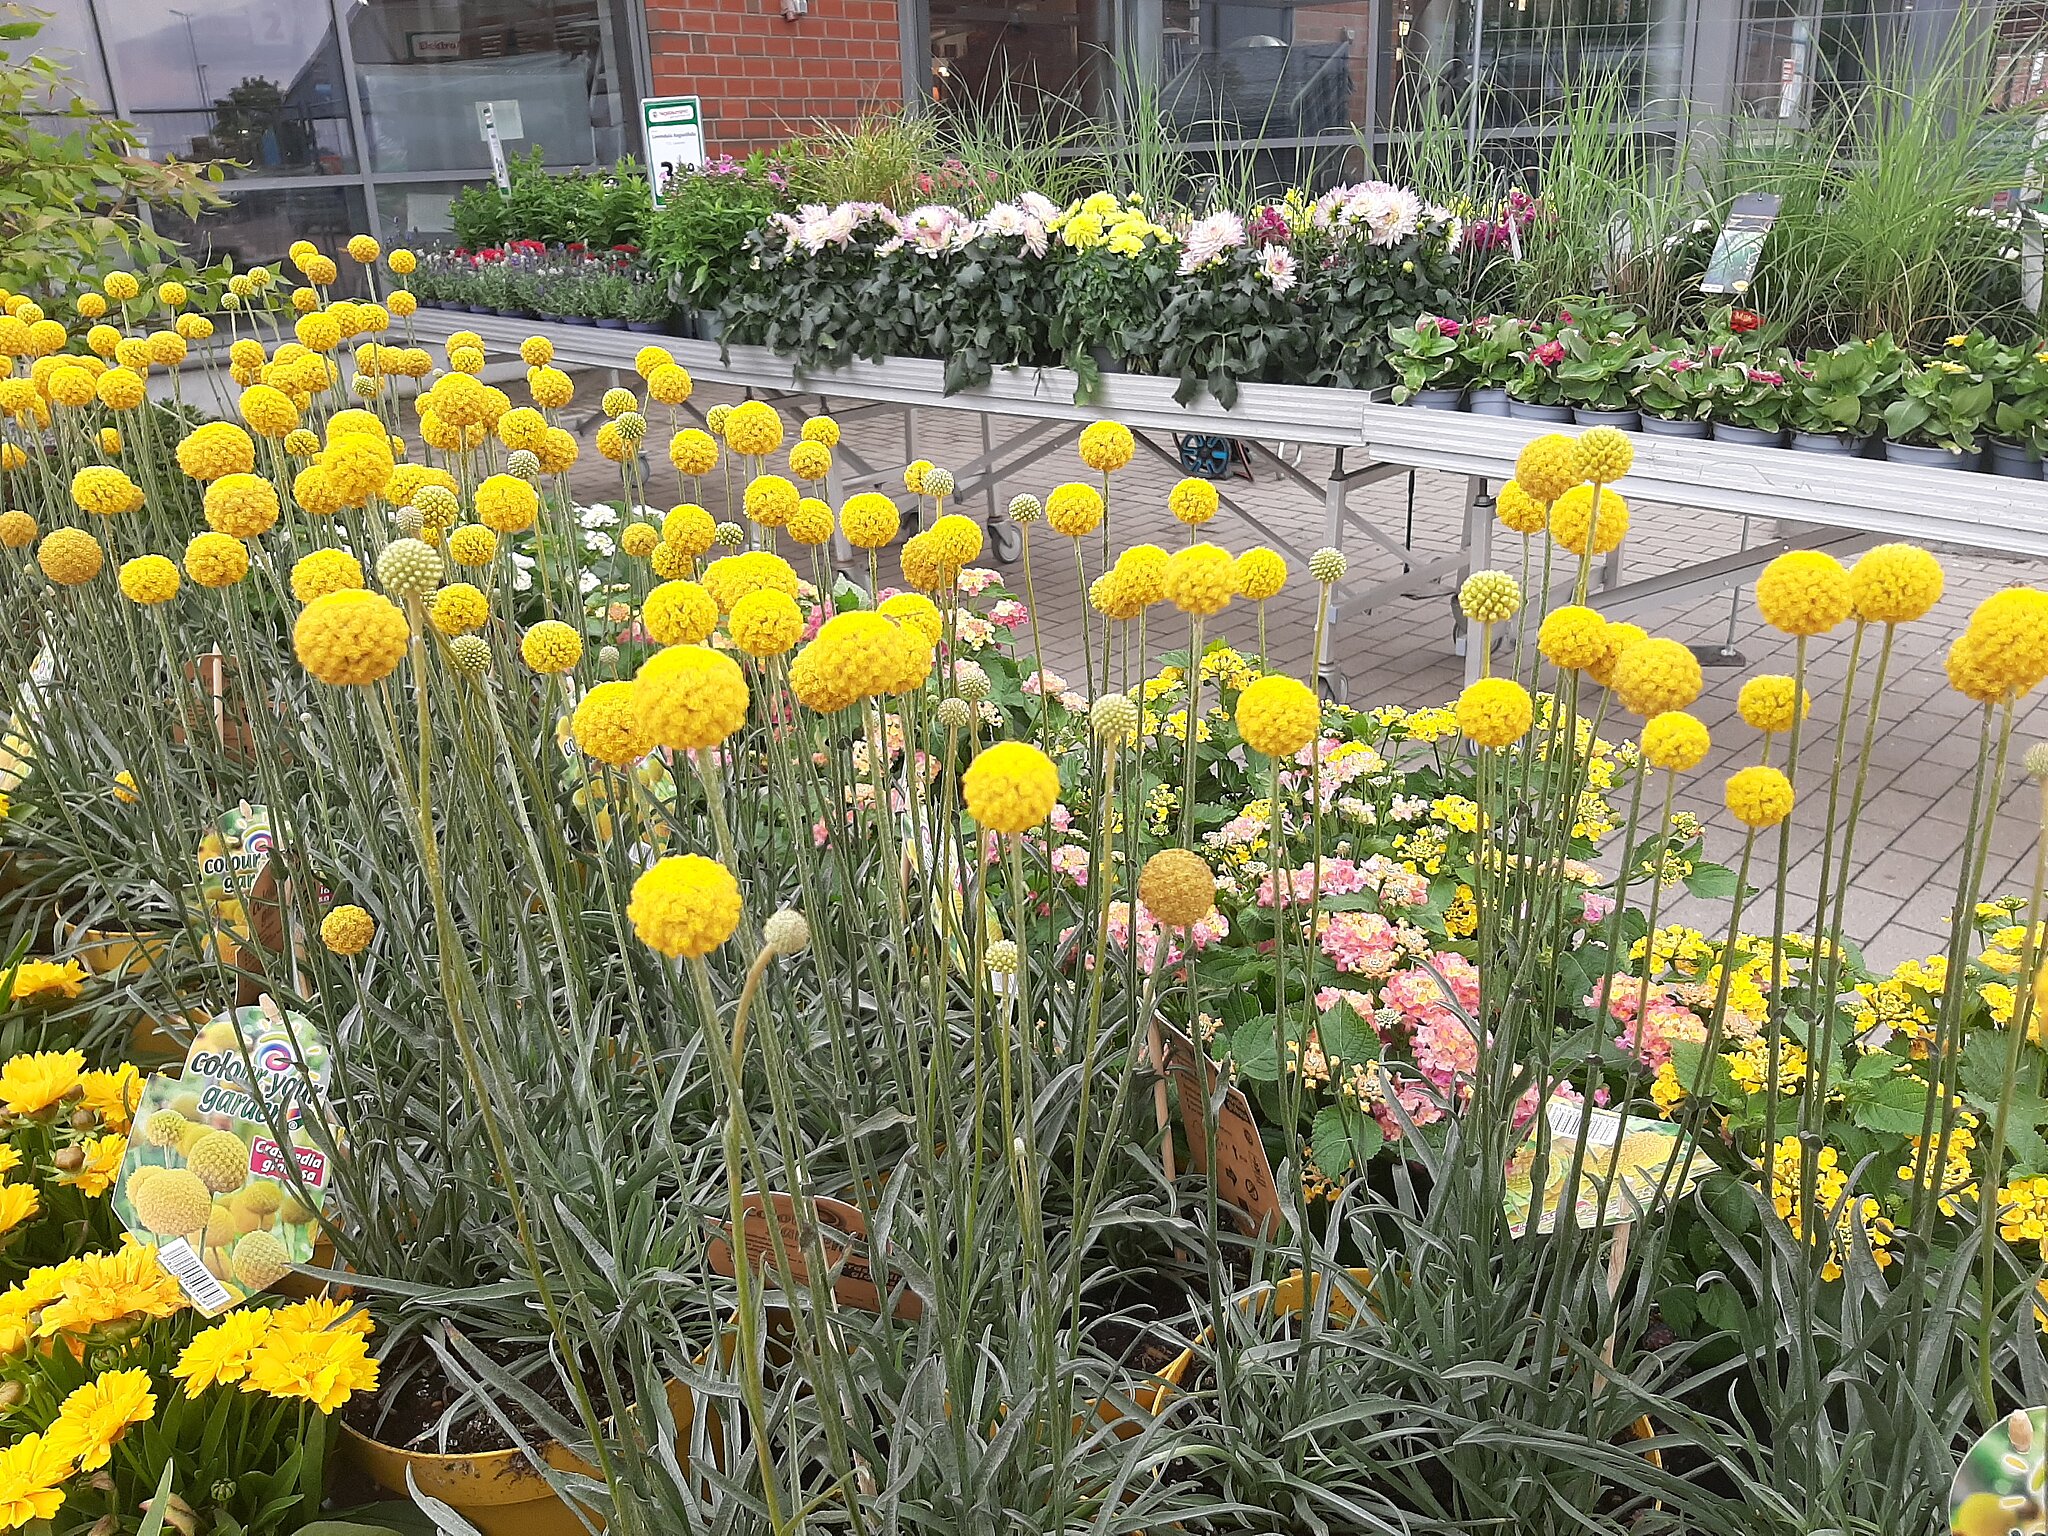 Gartenabteilung mit verschiedenen Grünpflanzen it gelber Blüte